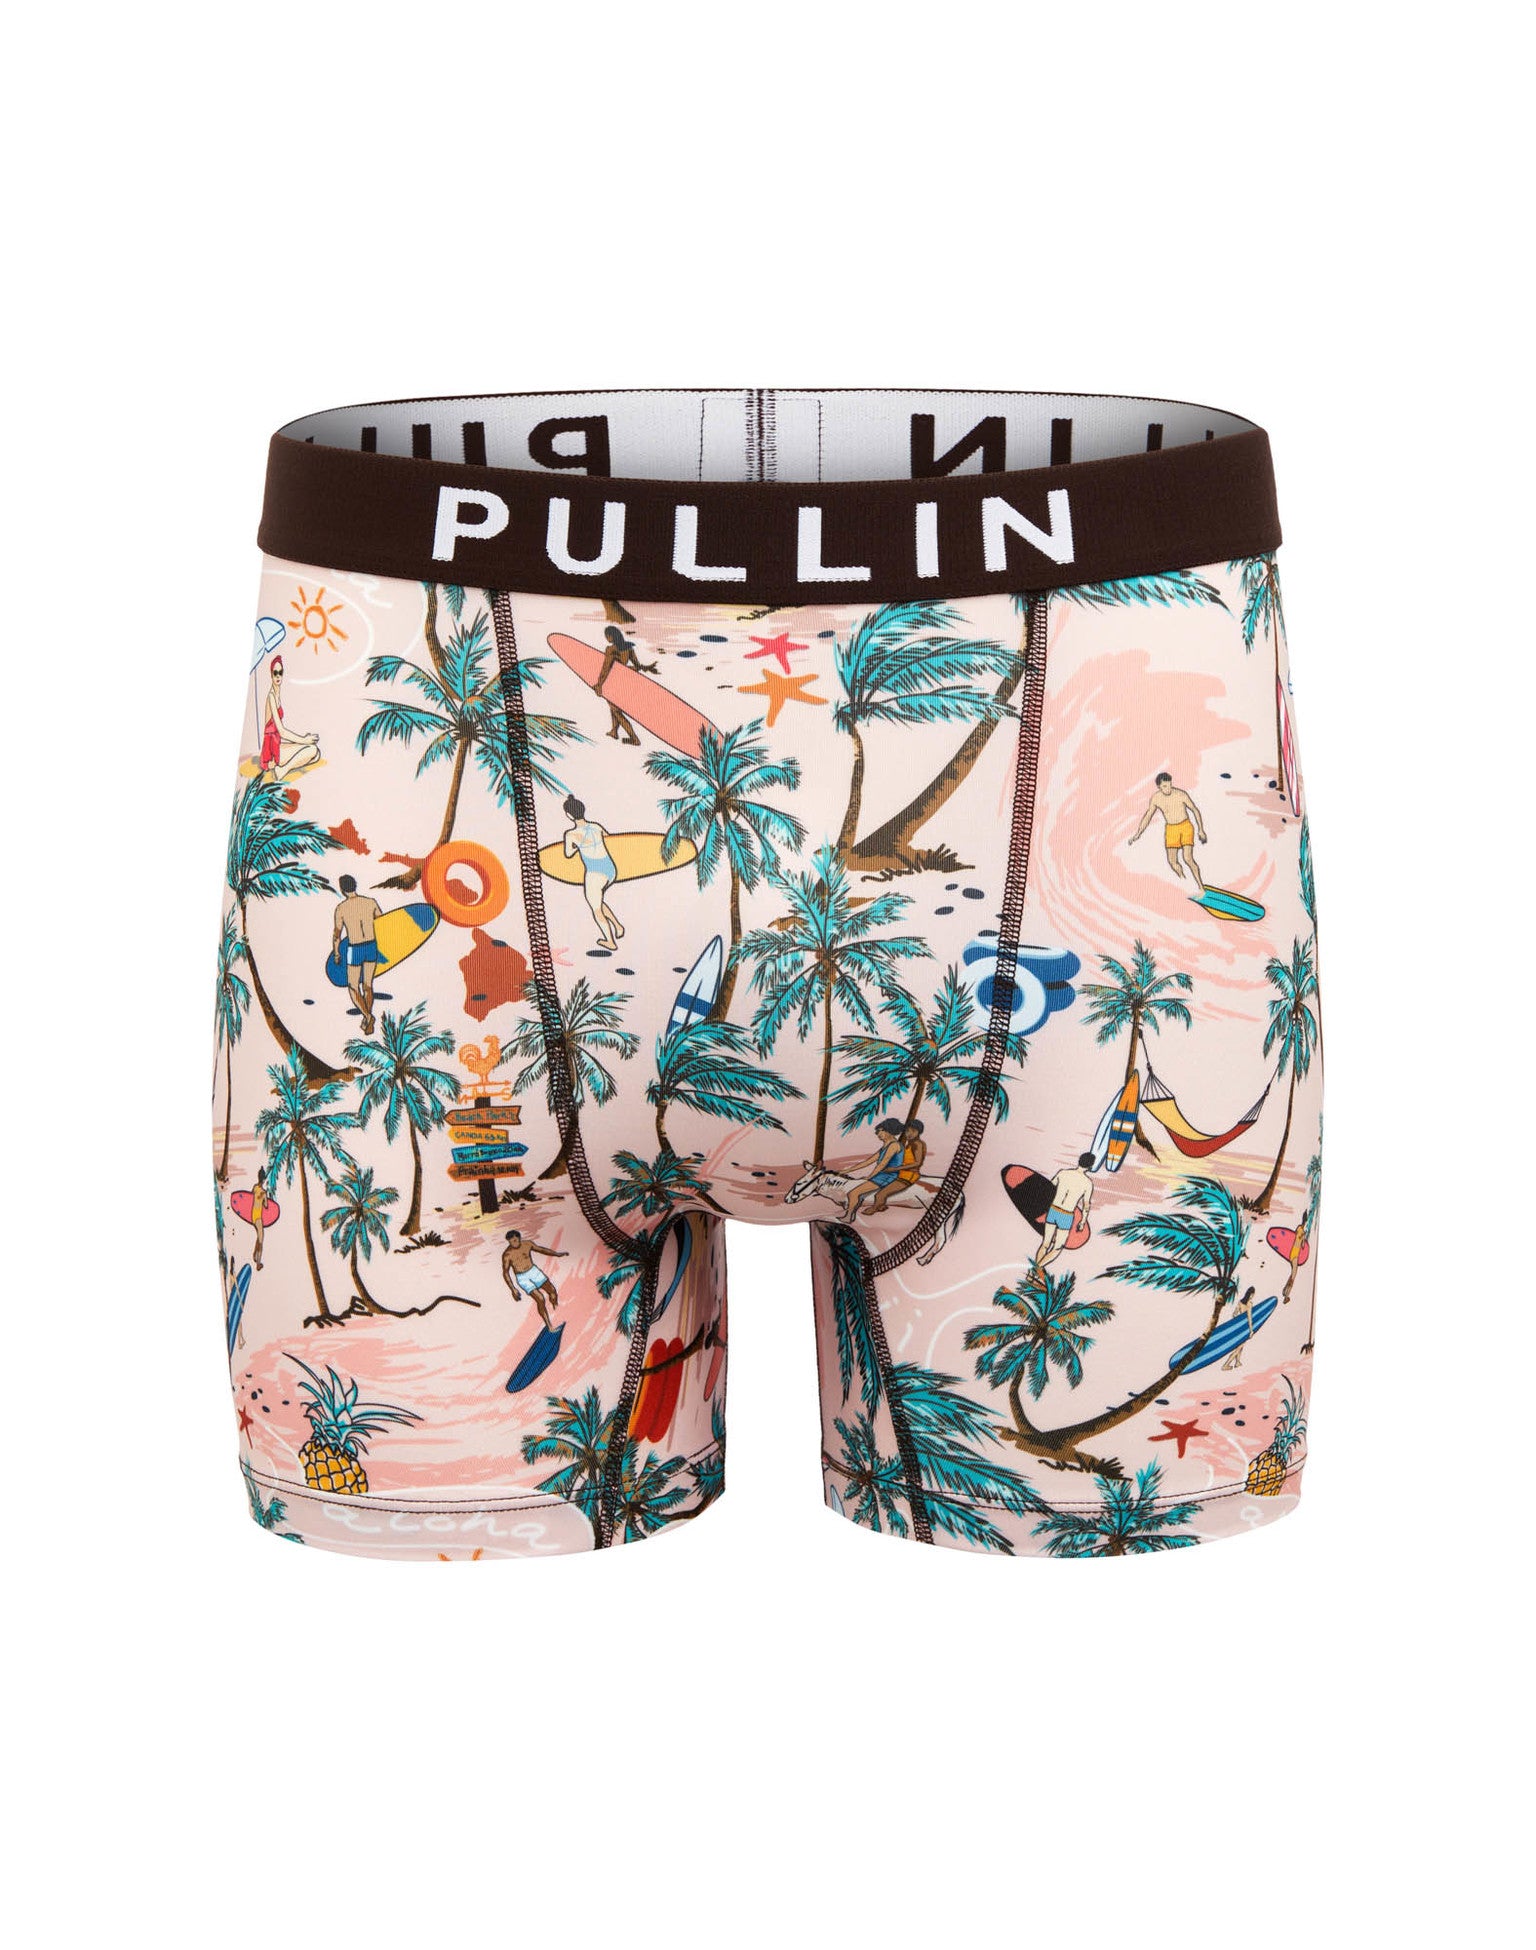 Pullin Men’s Fashion 2 Canoa Print Underwear